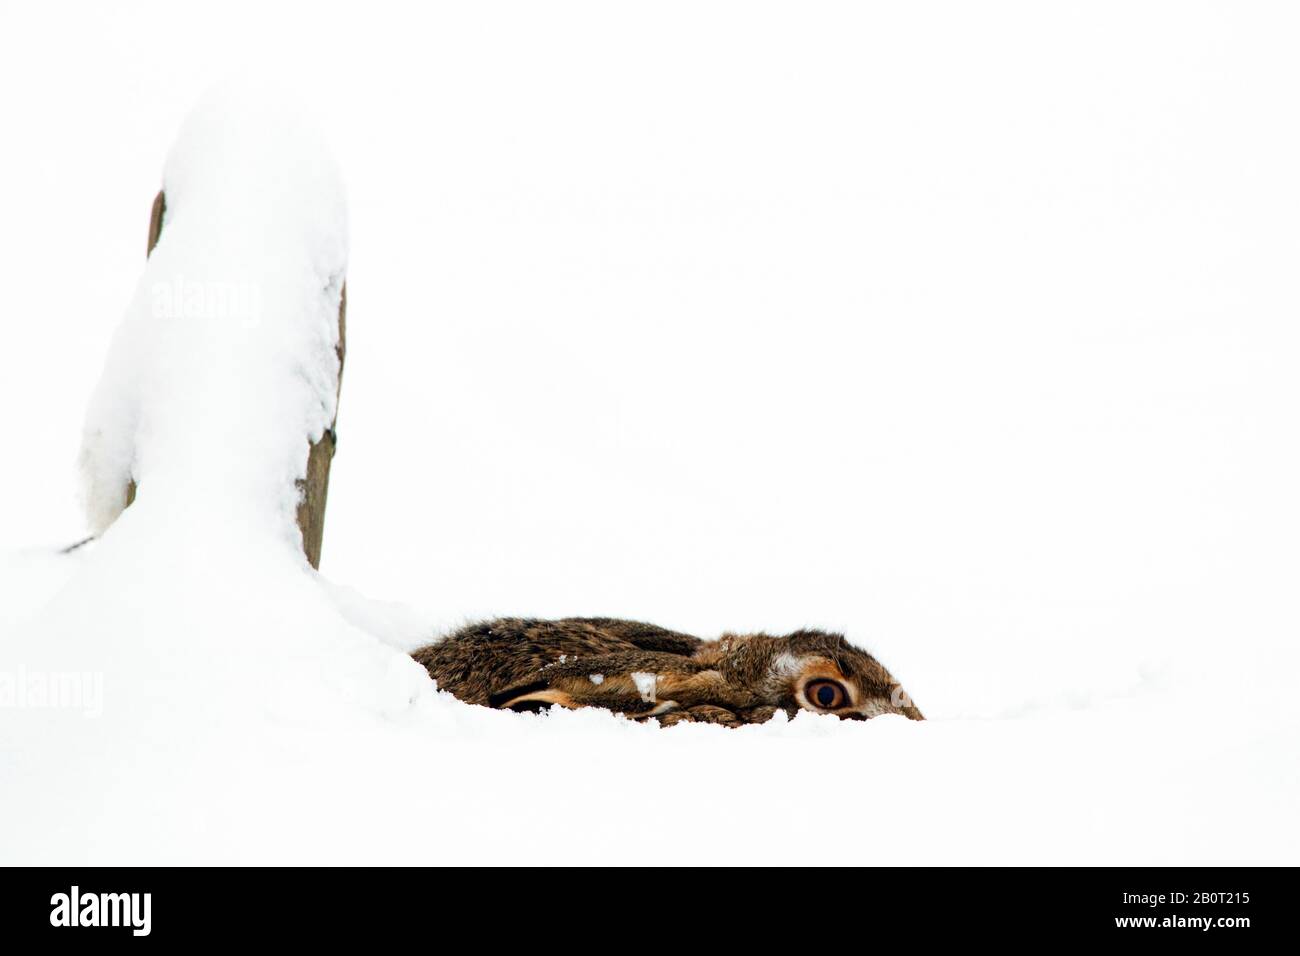 Europäischer Hase, brauner Hase (Lepus europaeus), im Schnee duckend, Seitenansicht, Niederlande Stockfoto